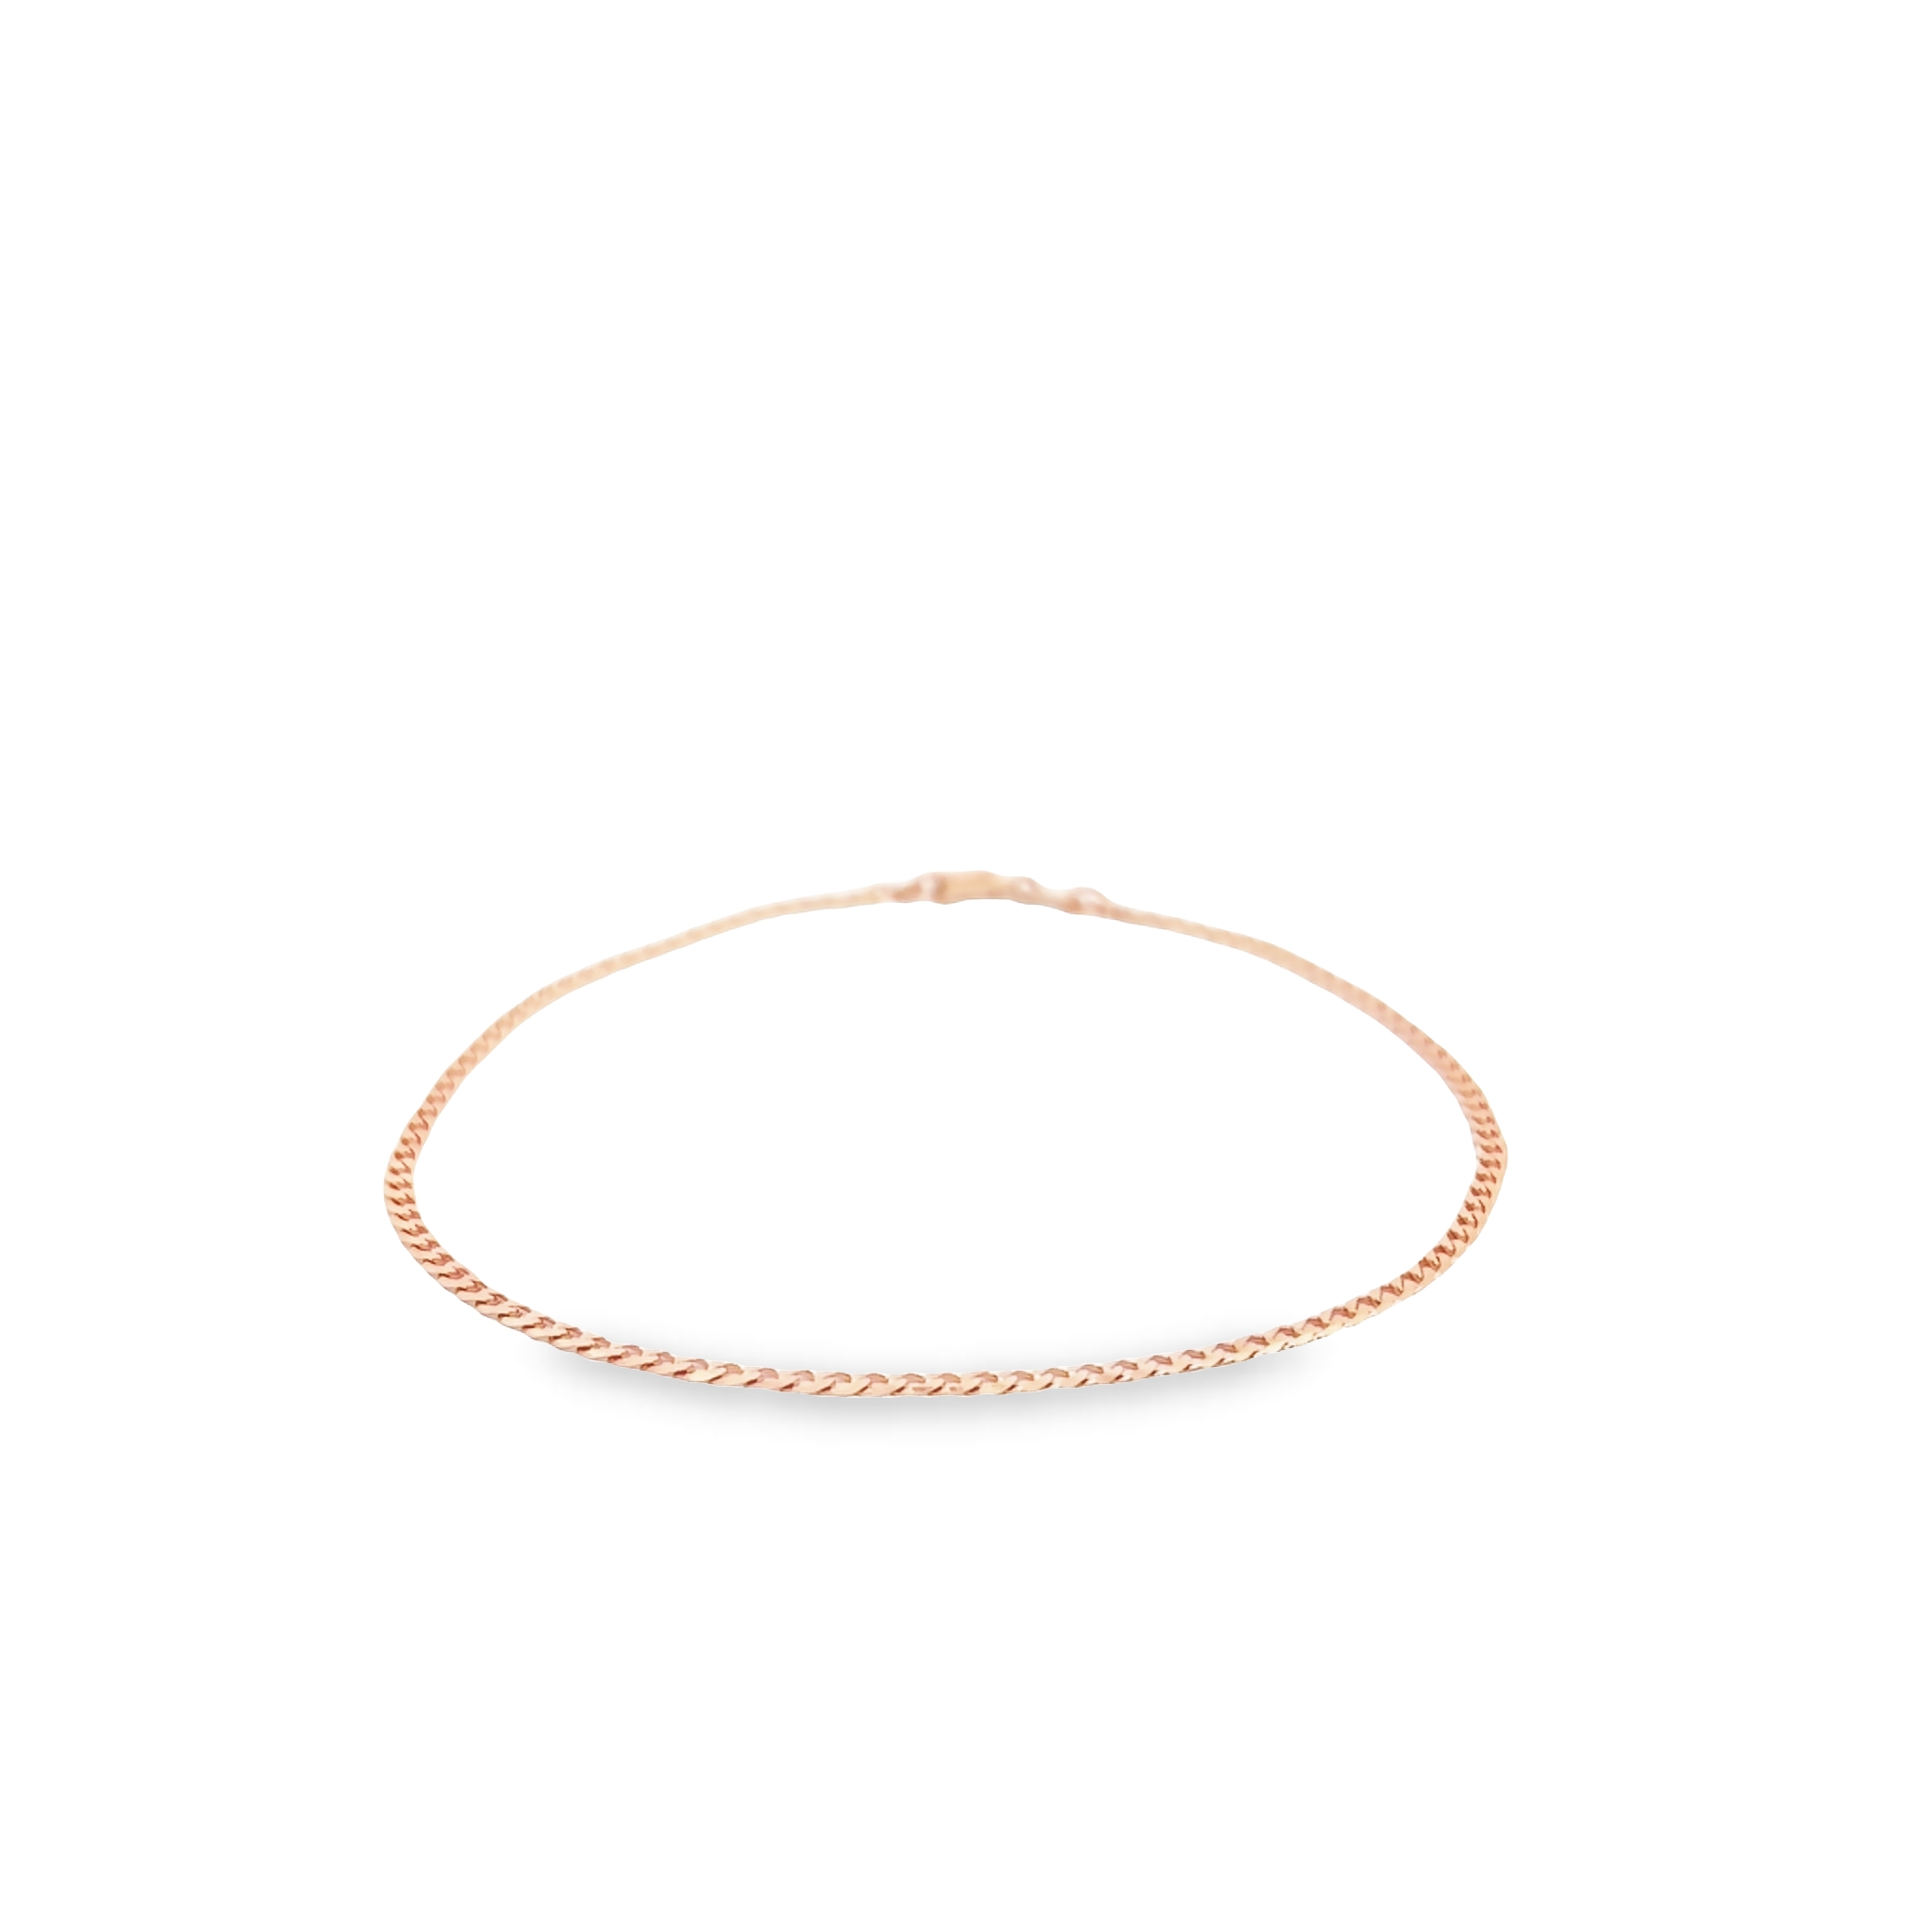 14 karat rose gold open curb bracelet. Length 7